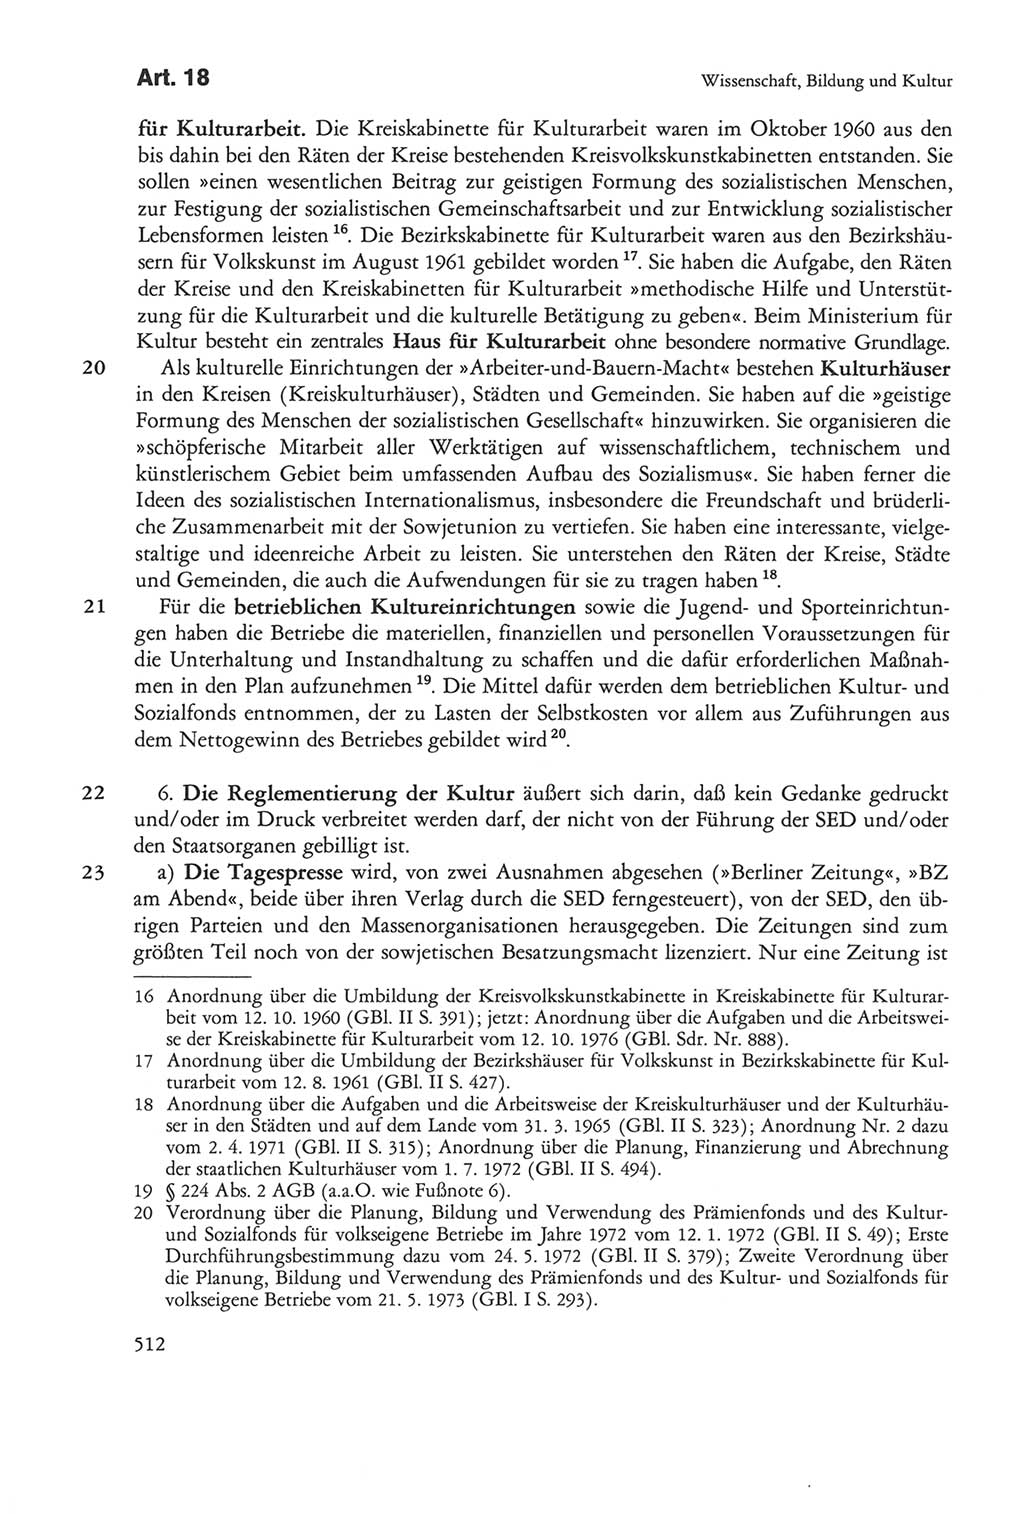 Die sozialistische Verfassung der Deutschen Demokratischen Republik (DDR), Kommentar mit einem Nachtrag 1997, Seite 512 (Soz. Verf. DDR Komm. Nachtr. 1997, S. 512)